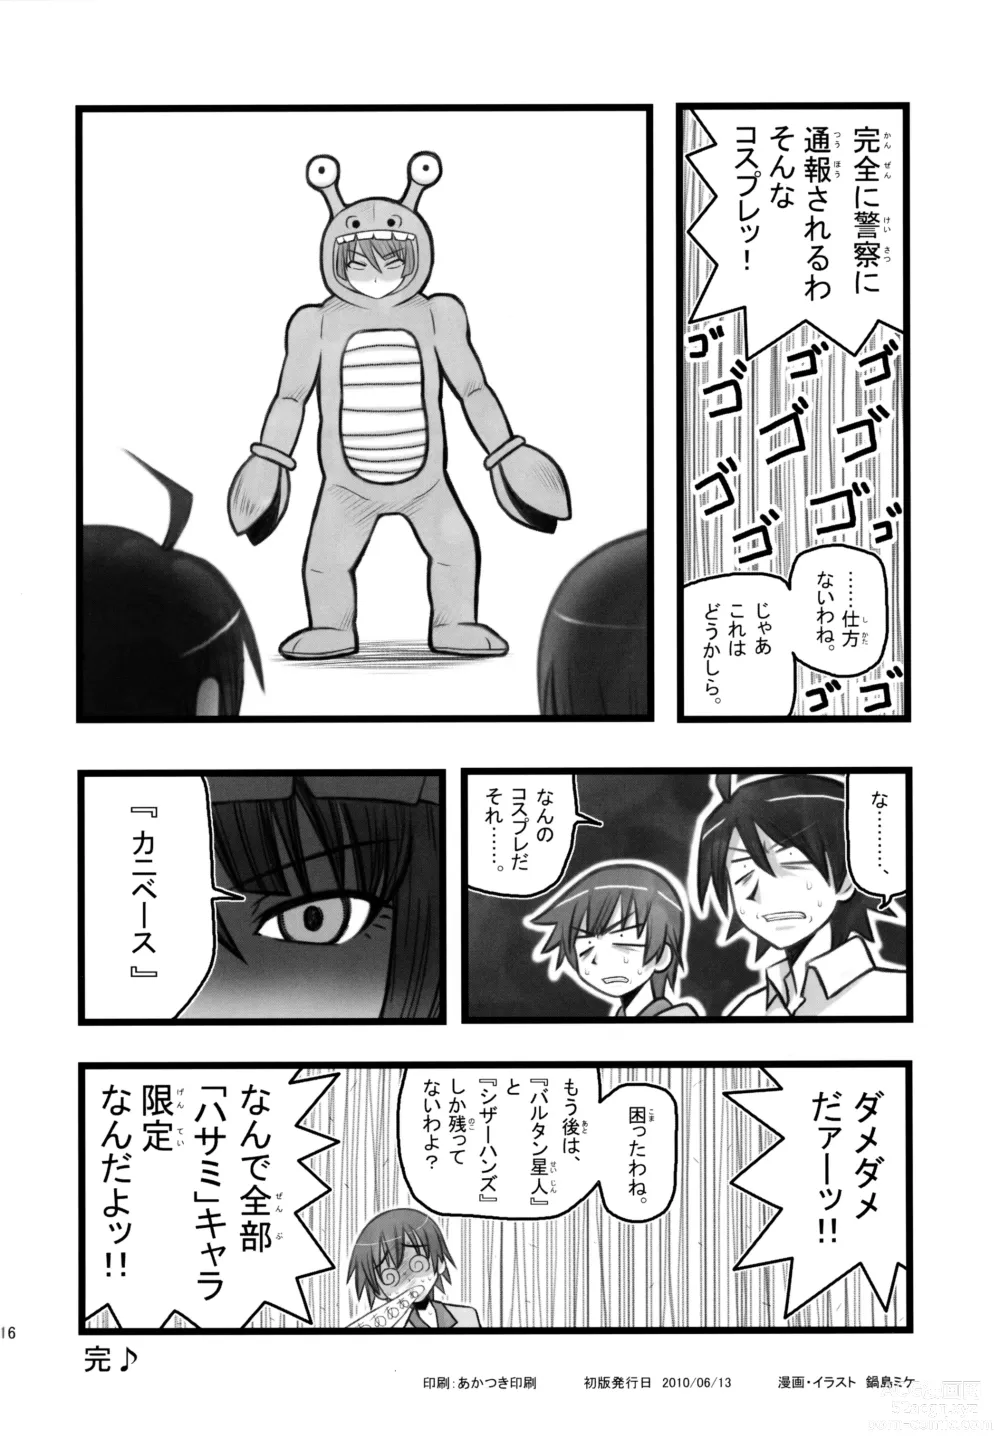 Page 16 of doujinshi Ryoujoku Hachikuji Mayoi Gonensei A